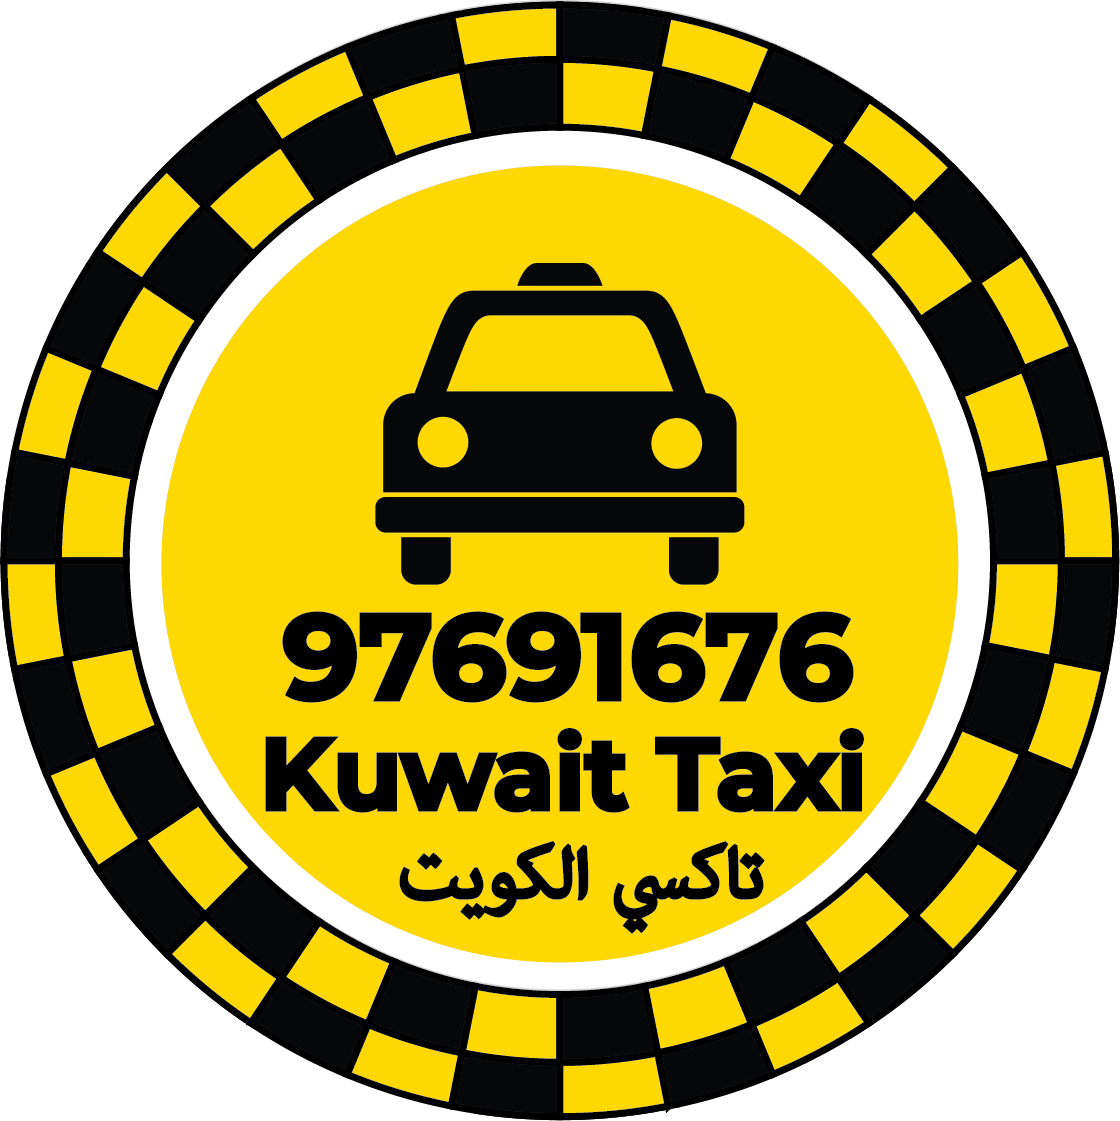 رقم تاكسي في مدينة الخيران - تاكسي مدينة الخيران